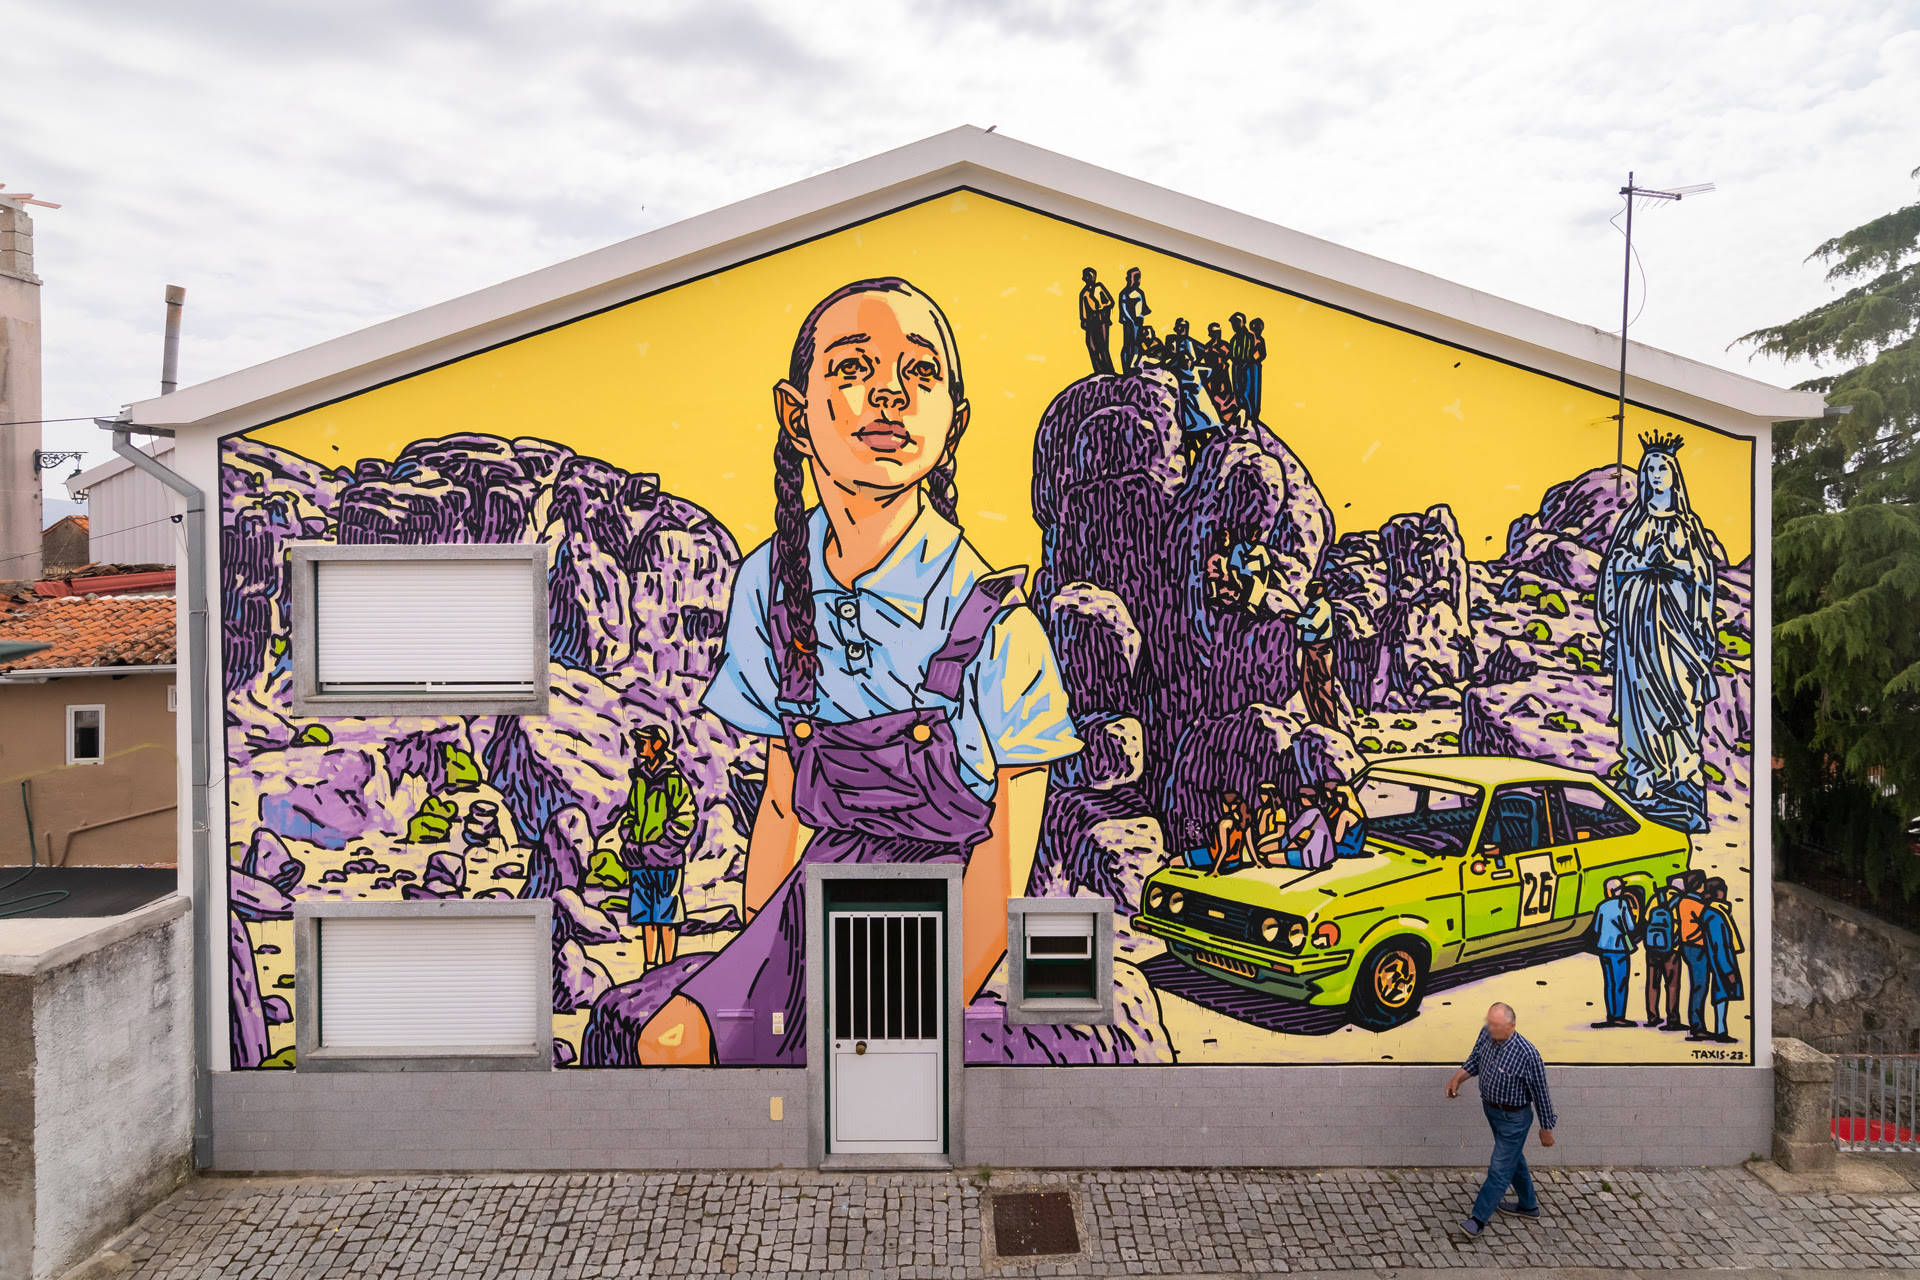 O WOOL | Covilhã Arte Urbana regressa em Junho. A cidade serrana volta a unir-se em torno do primeiro festival de expressões artísticas urbanas em Portugal